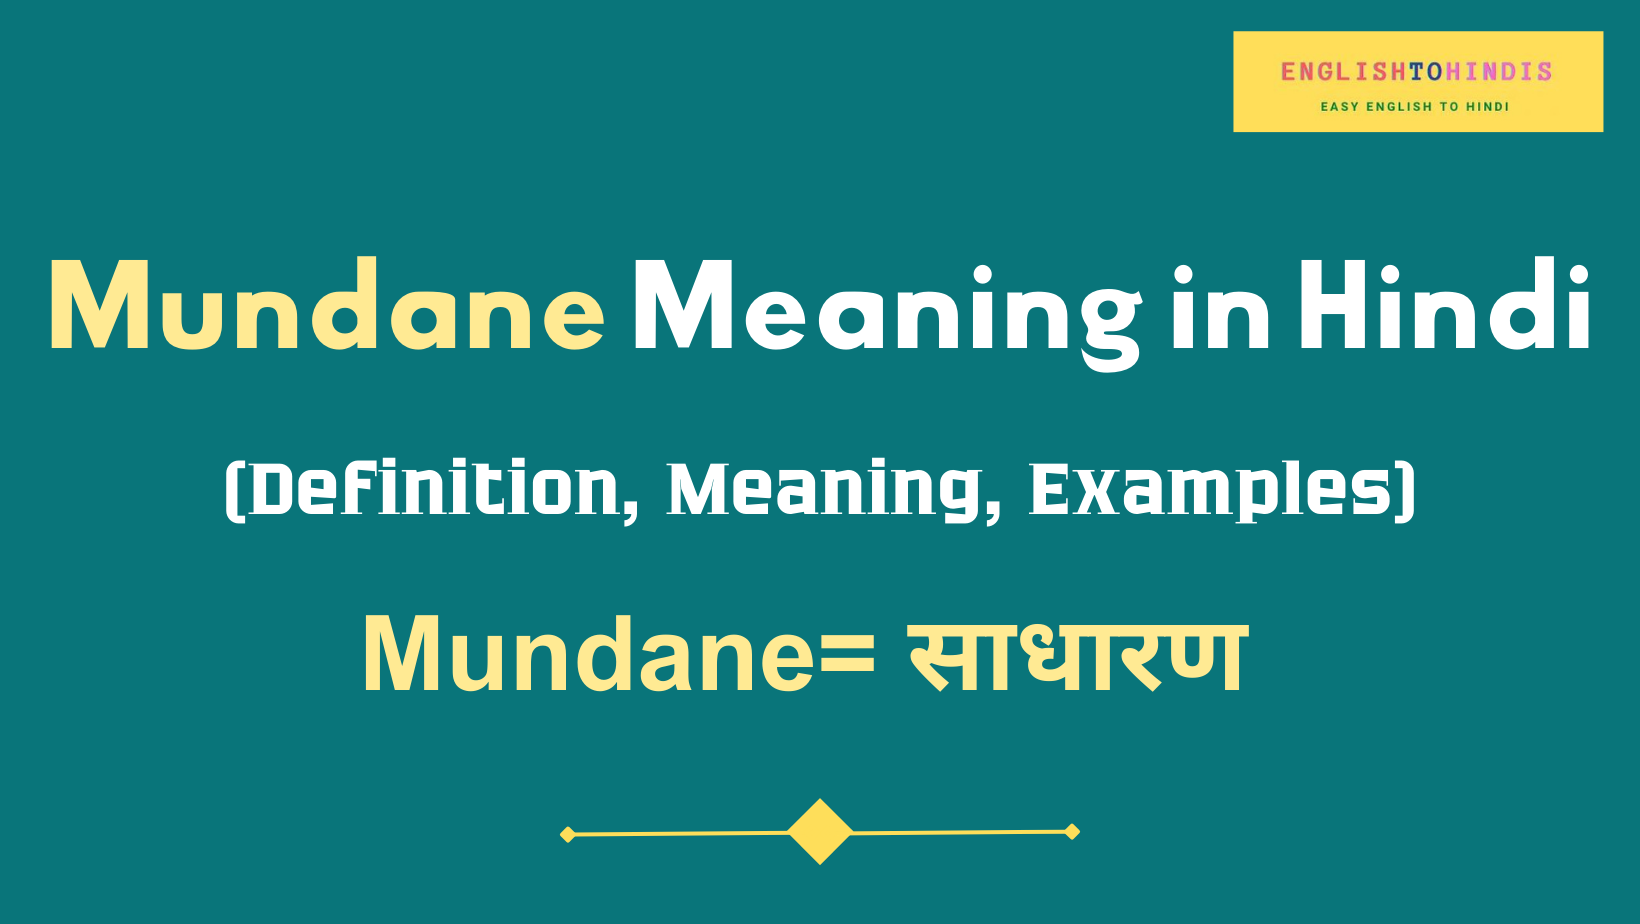 Mundane meaning in Hindi